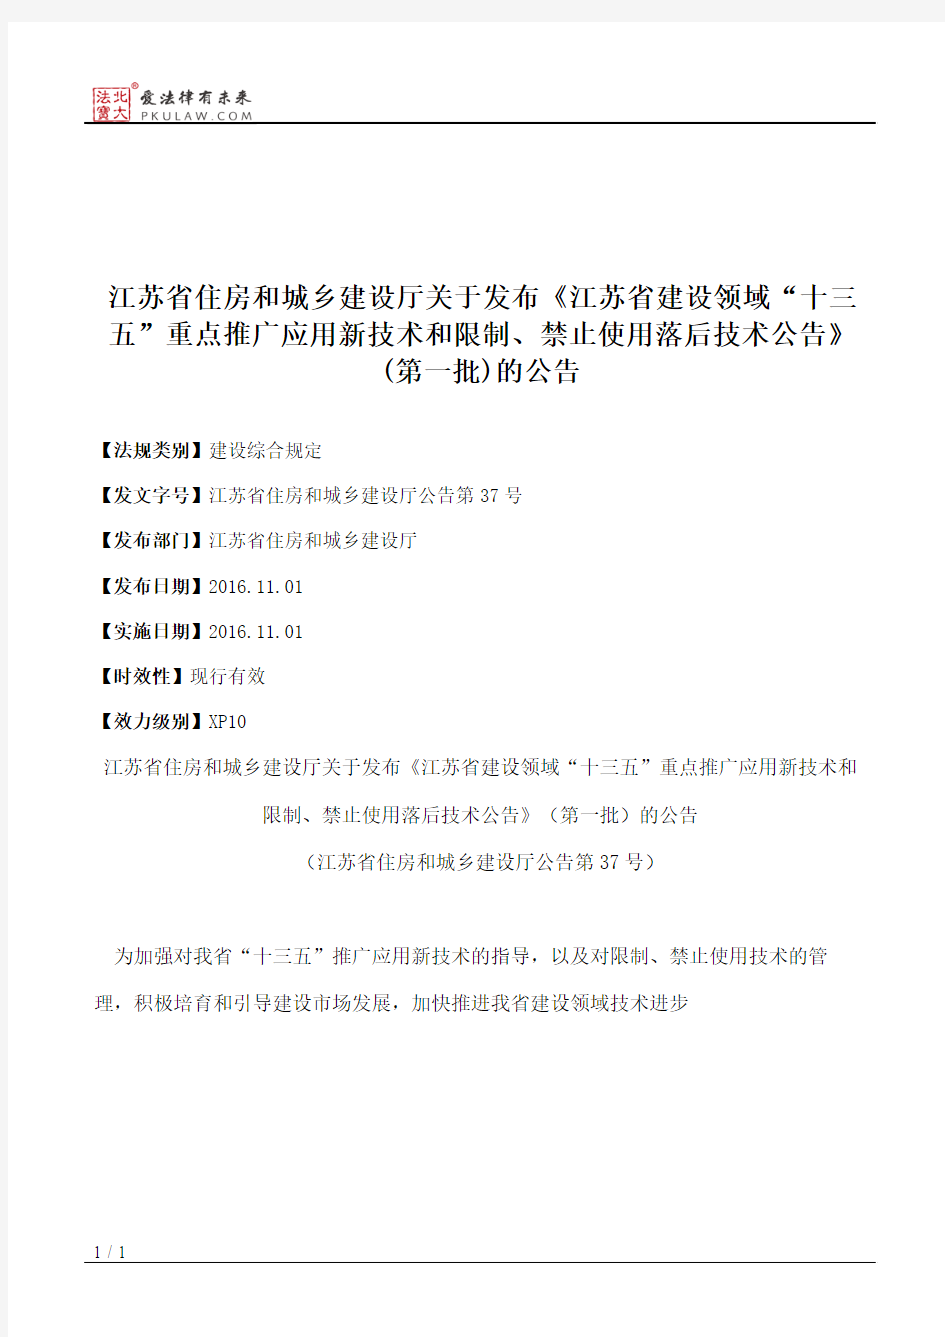 江苏省住房和城乡建设厅关于发布《江苏省建设领域“十三五”重点